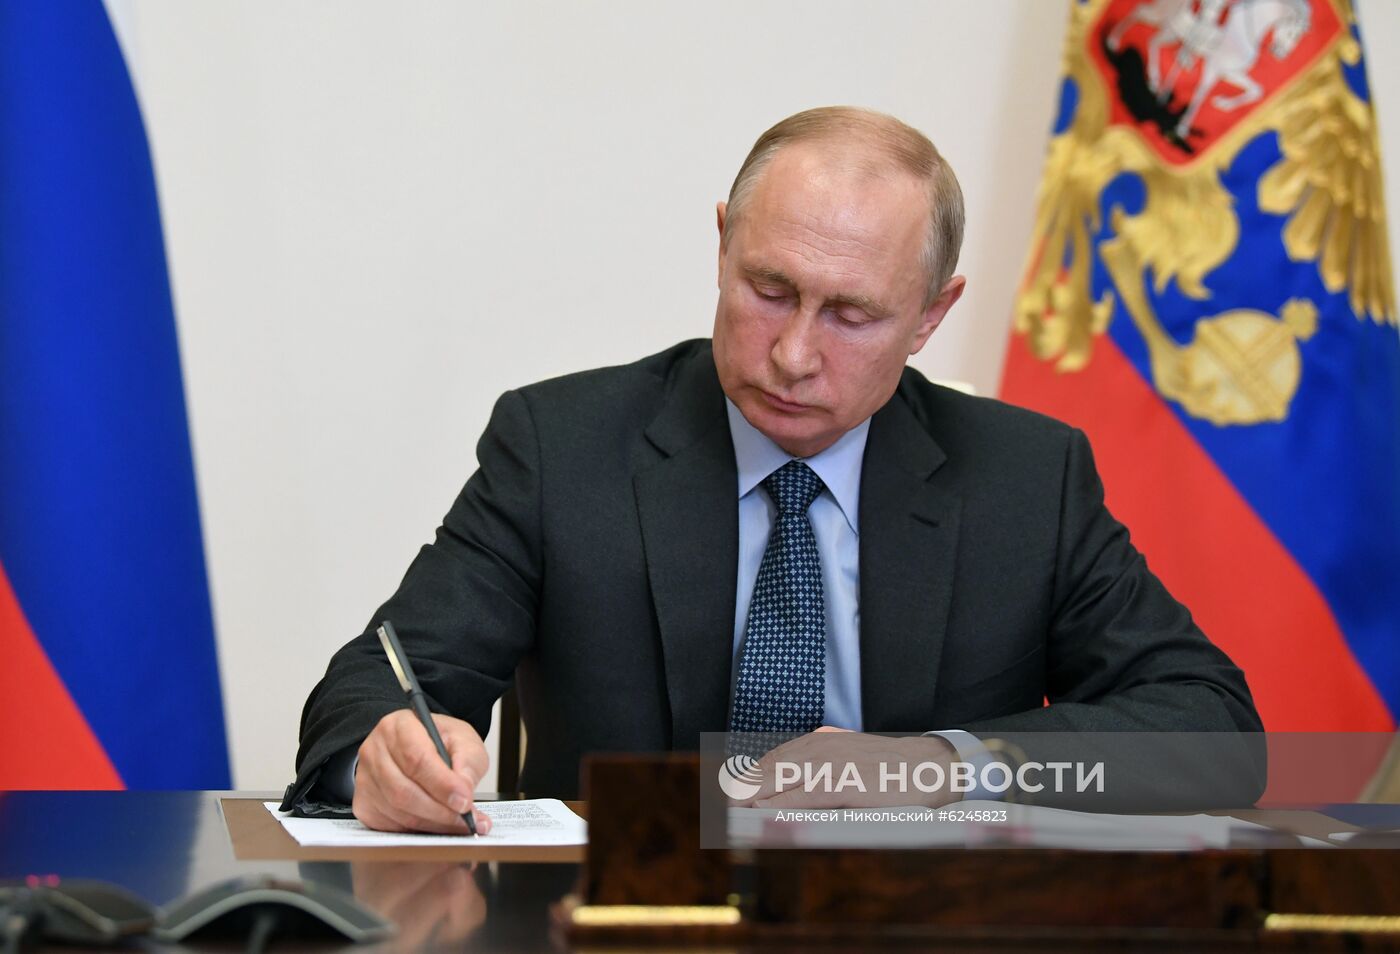 Президент РФ В. Путин встретился с президентом Татарстана Р. Миннихановым